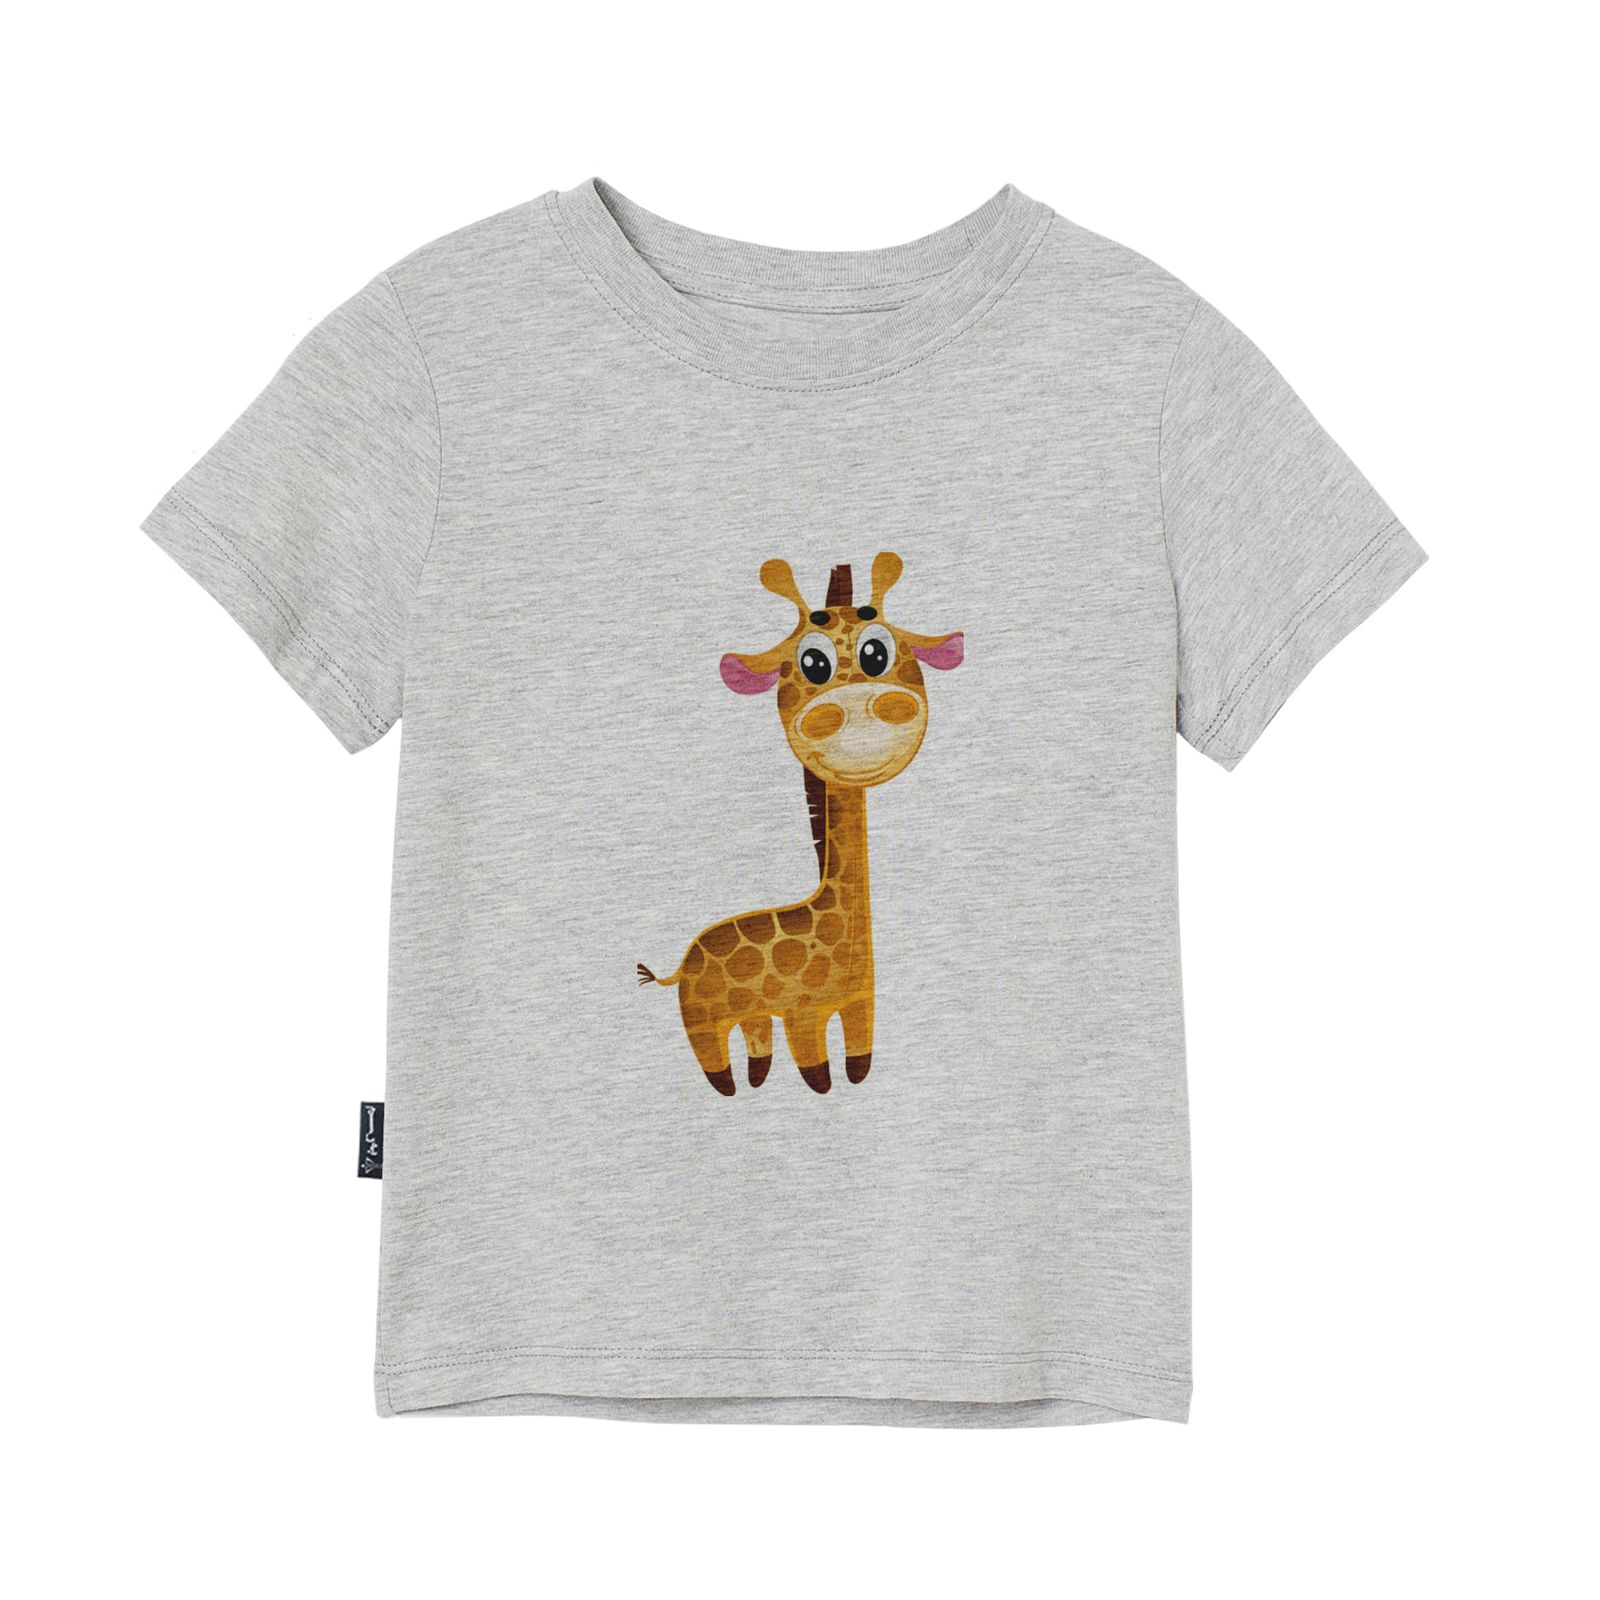 تی شرت آستین کوتاه پسرانه به رسم مدل زرافه کد 1109 -  - 3